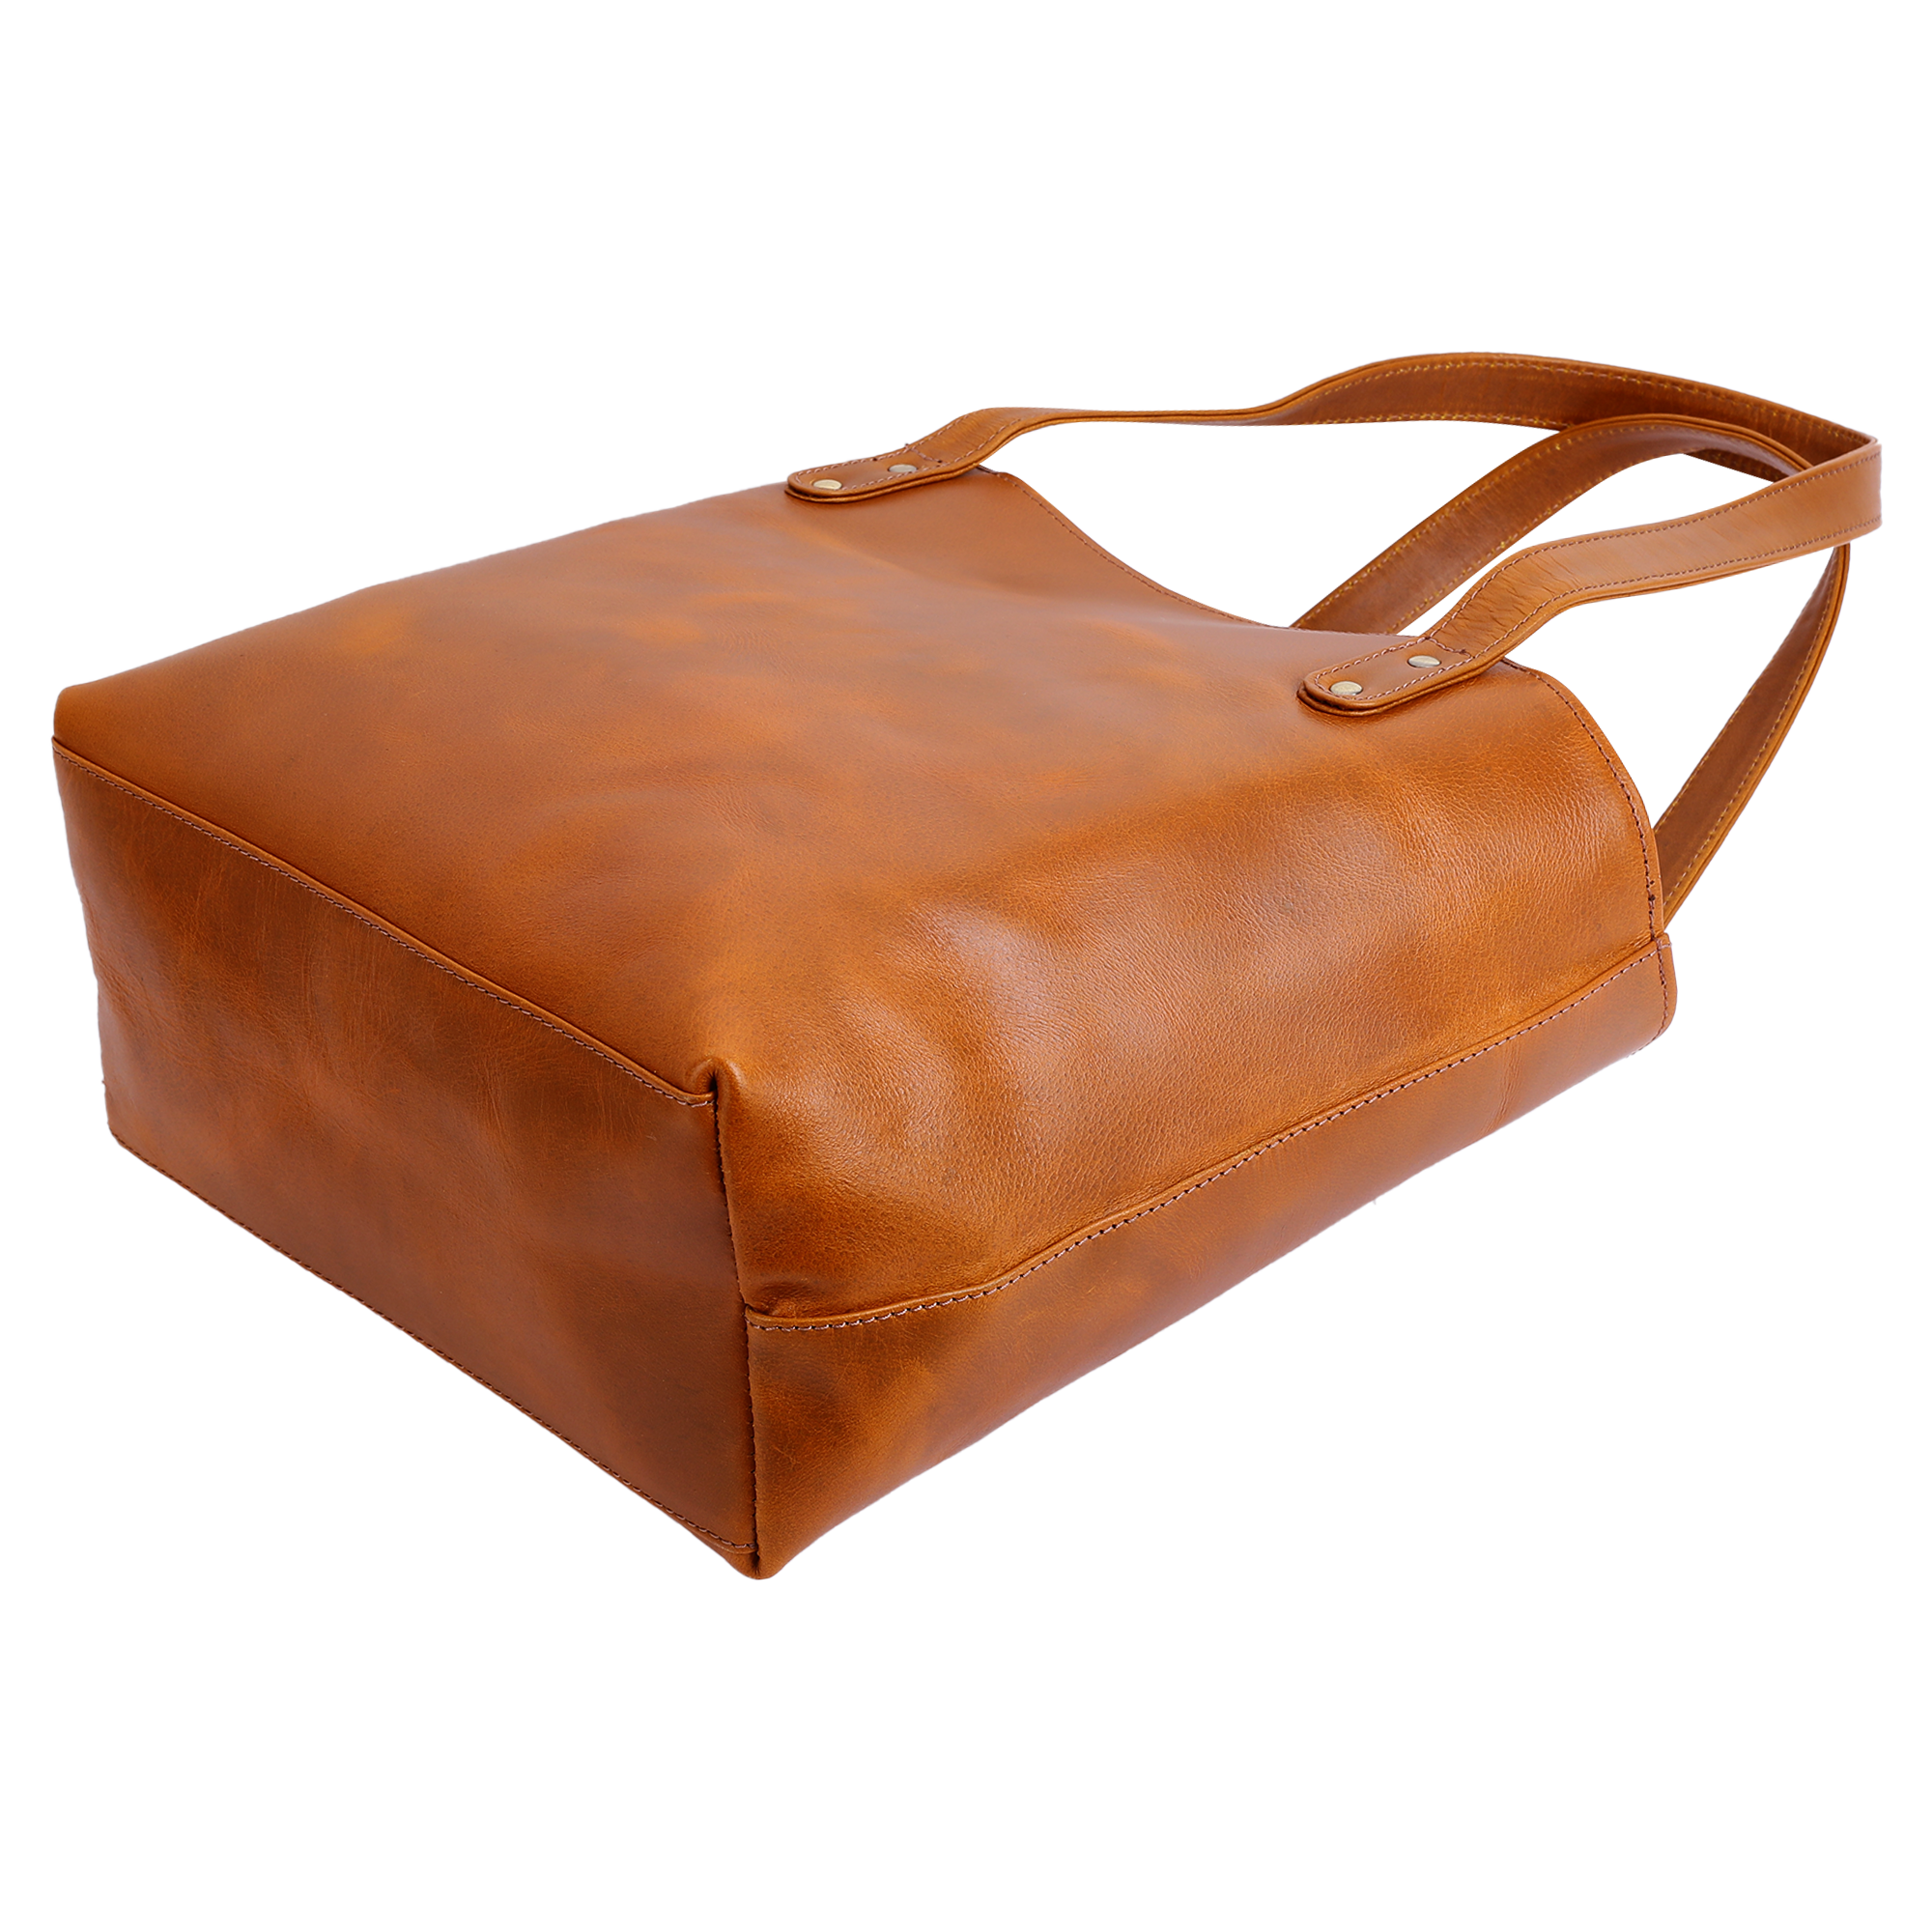 Savanna Shopper Bag